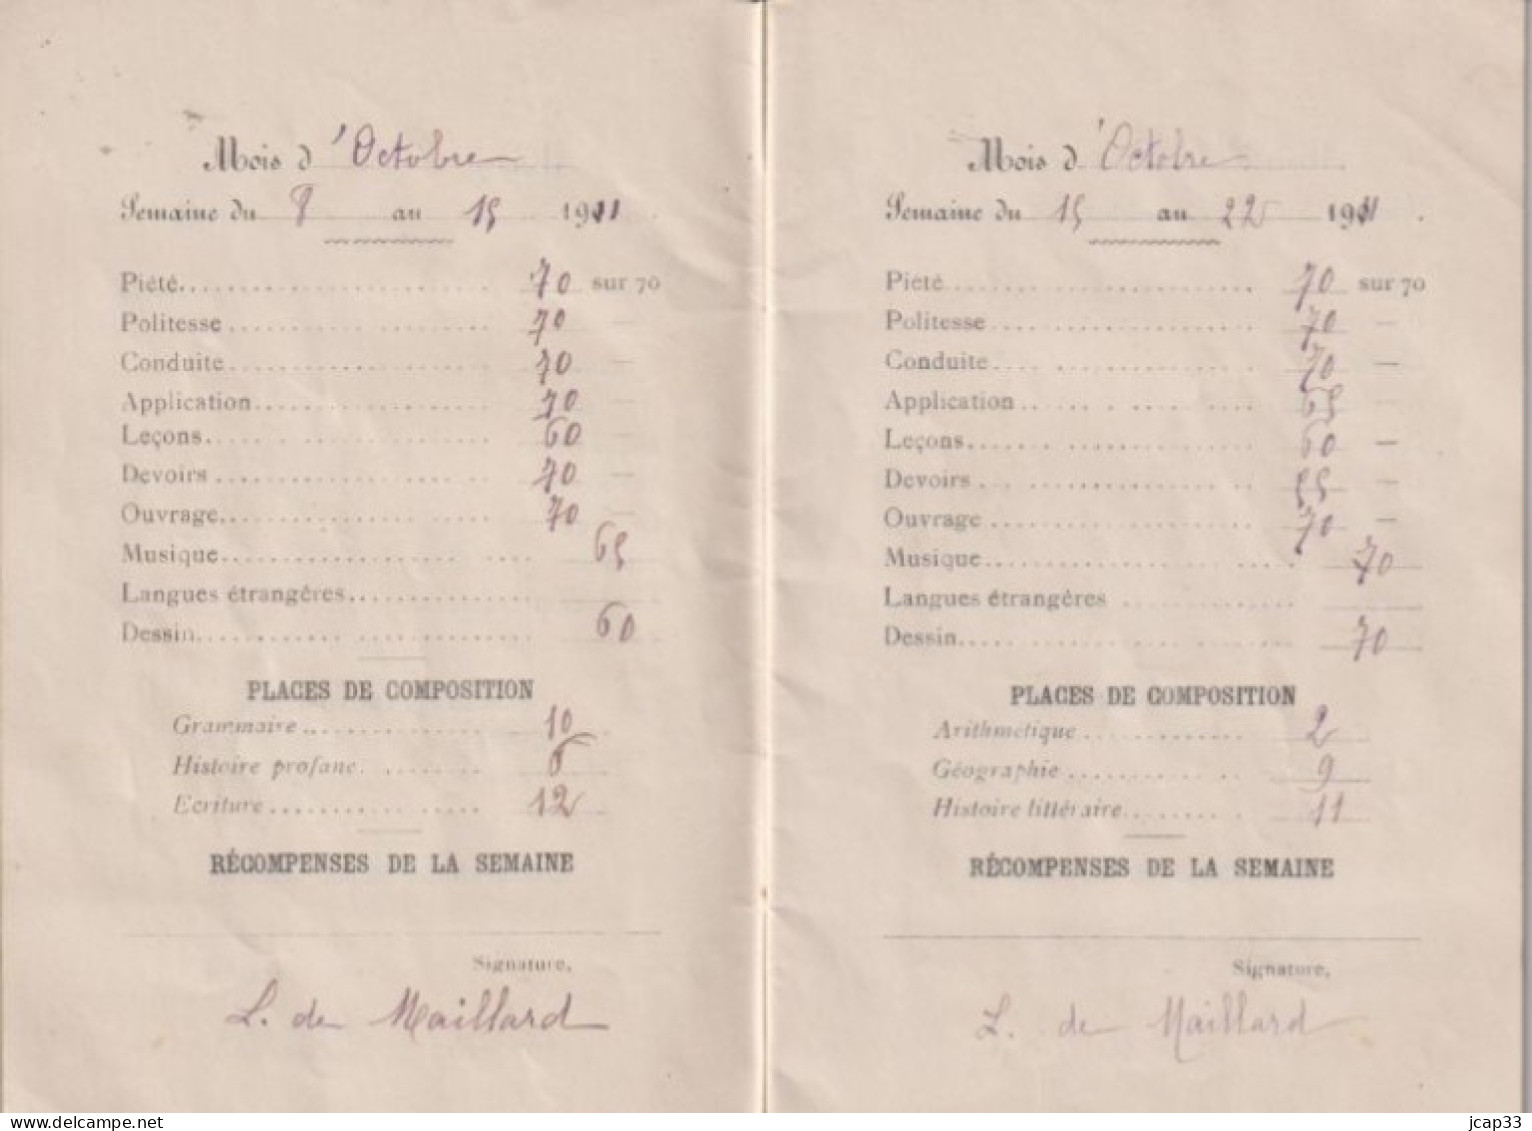 36 CHATEAUROUX  -  INSTITUTION STE SOLANGE 45 Avenue De La Gare  -  LIVRET SCOLAIRE  -  1911  - - Diplomas Y Calificaciones Escolares